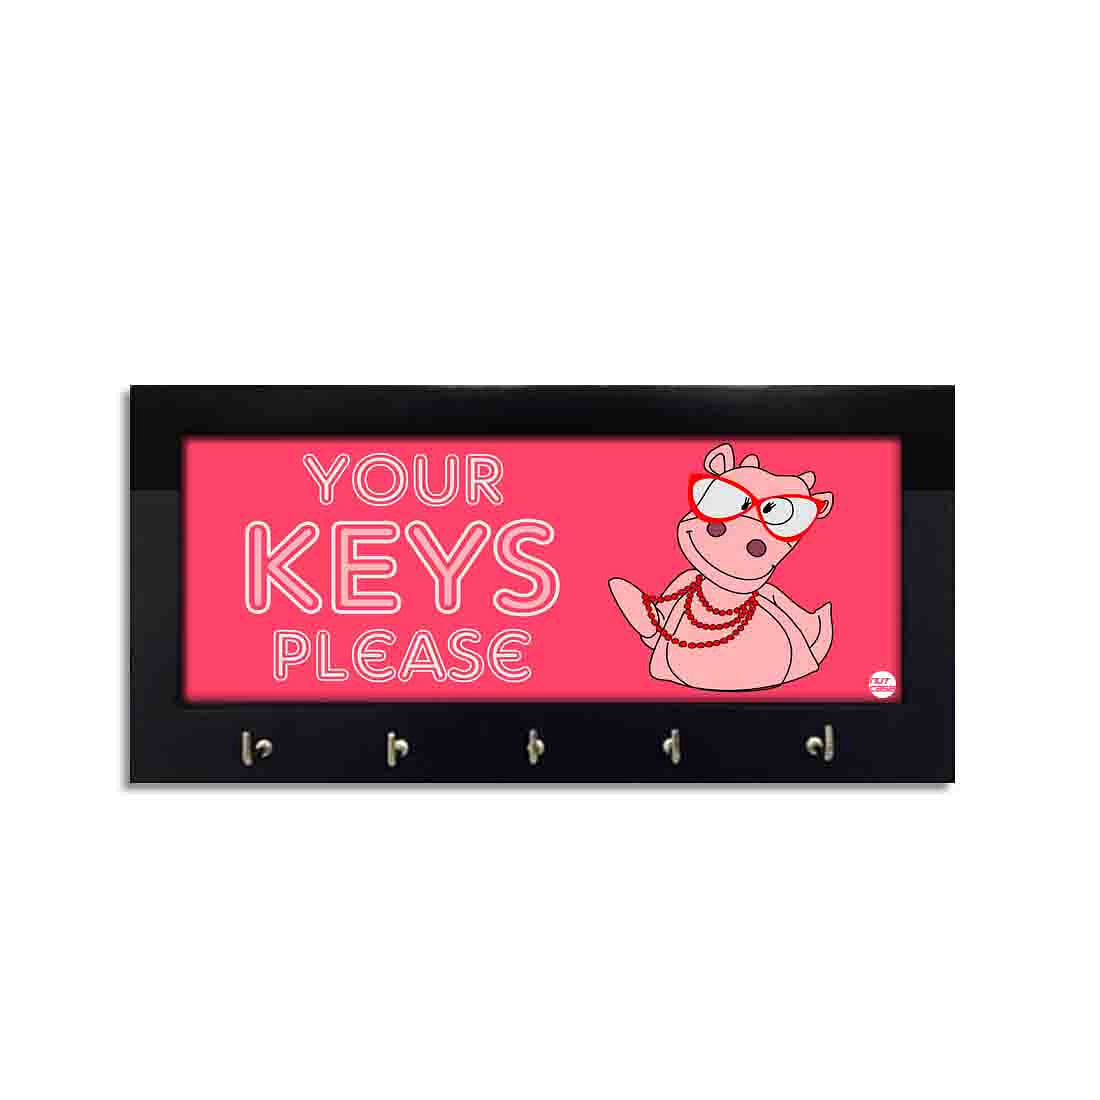 Wooden Key Holder Hanger for Wall Keys Stand - Pink Nutcase